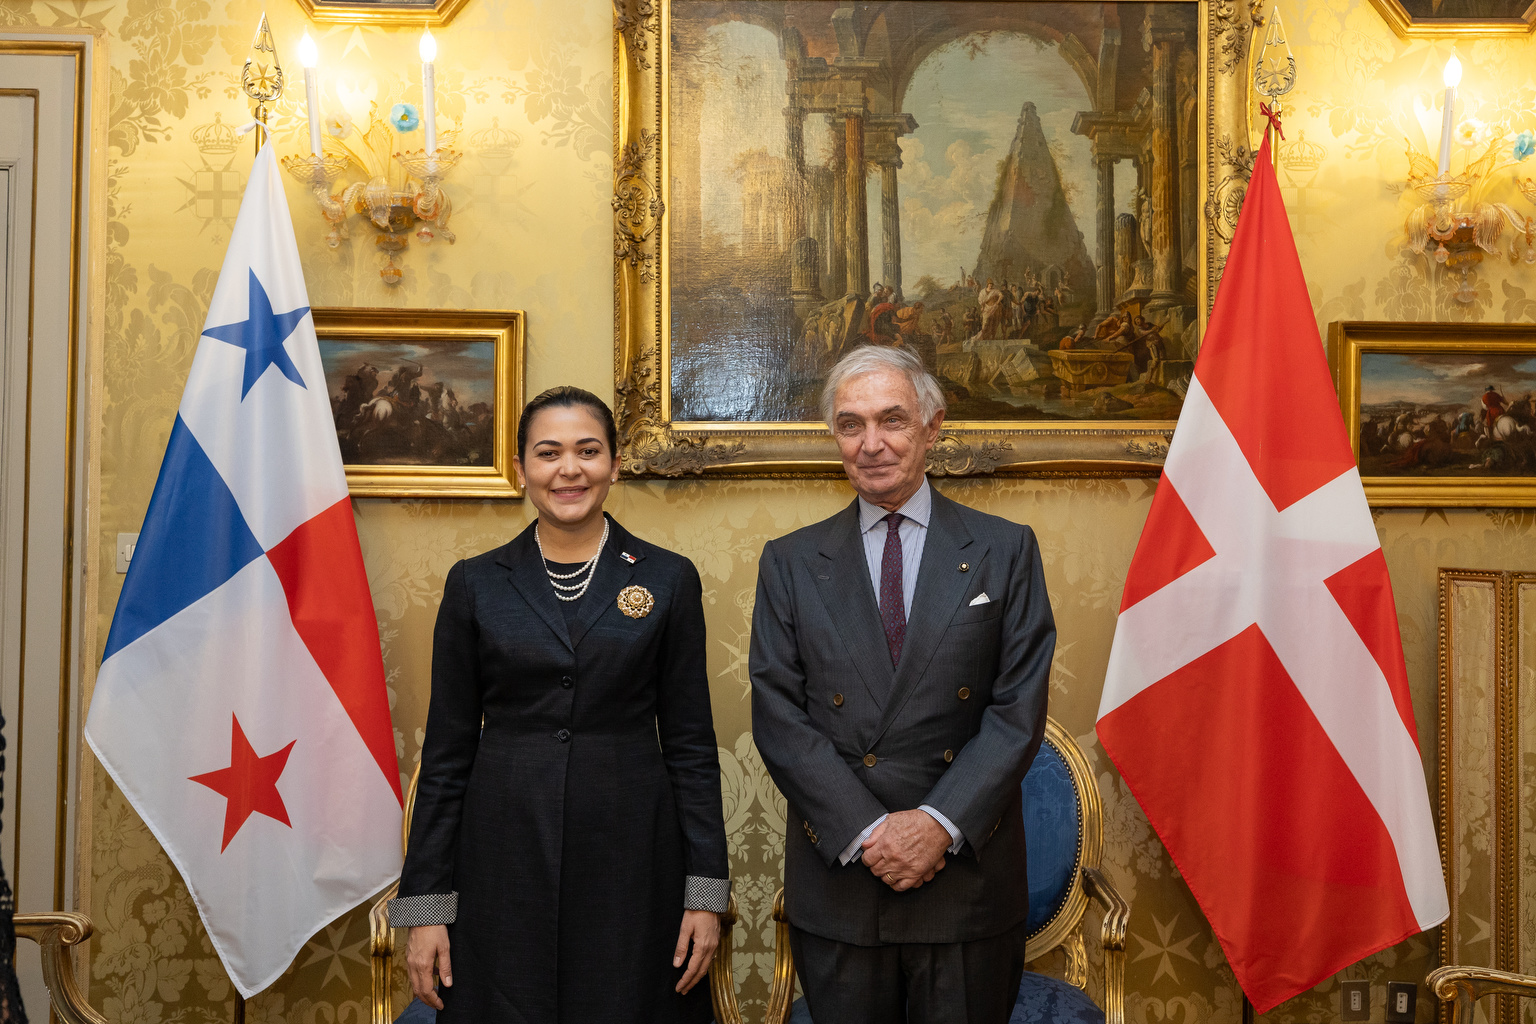 Celebrati i 75 anni di relazioni diplomatiche con la Repubblica di Panama